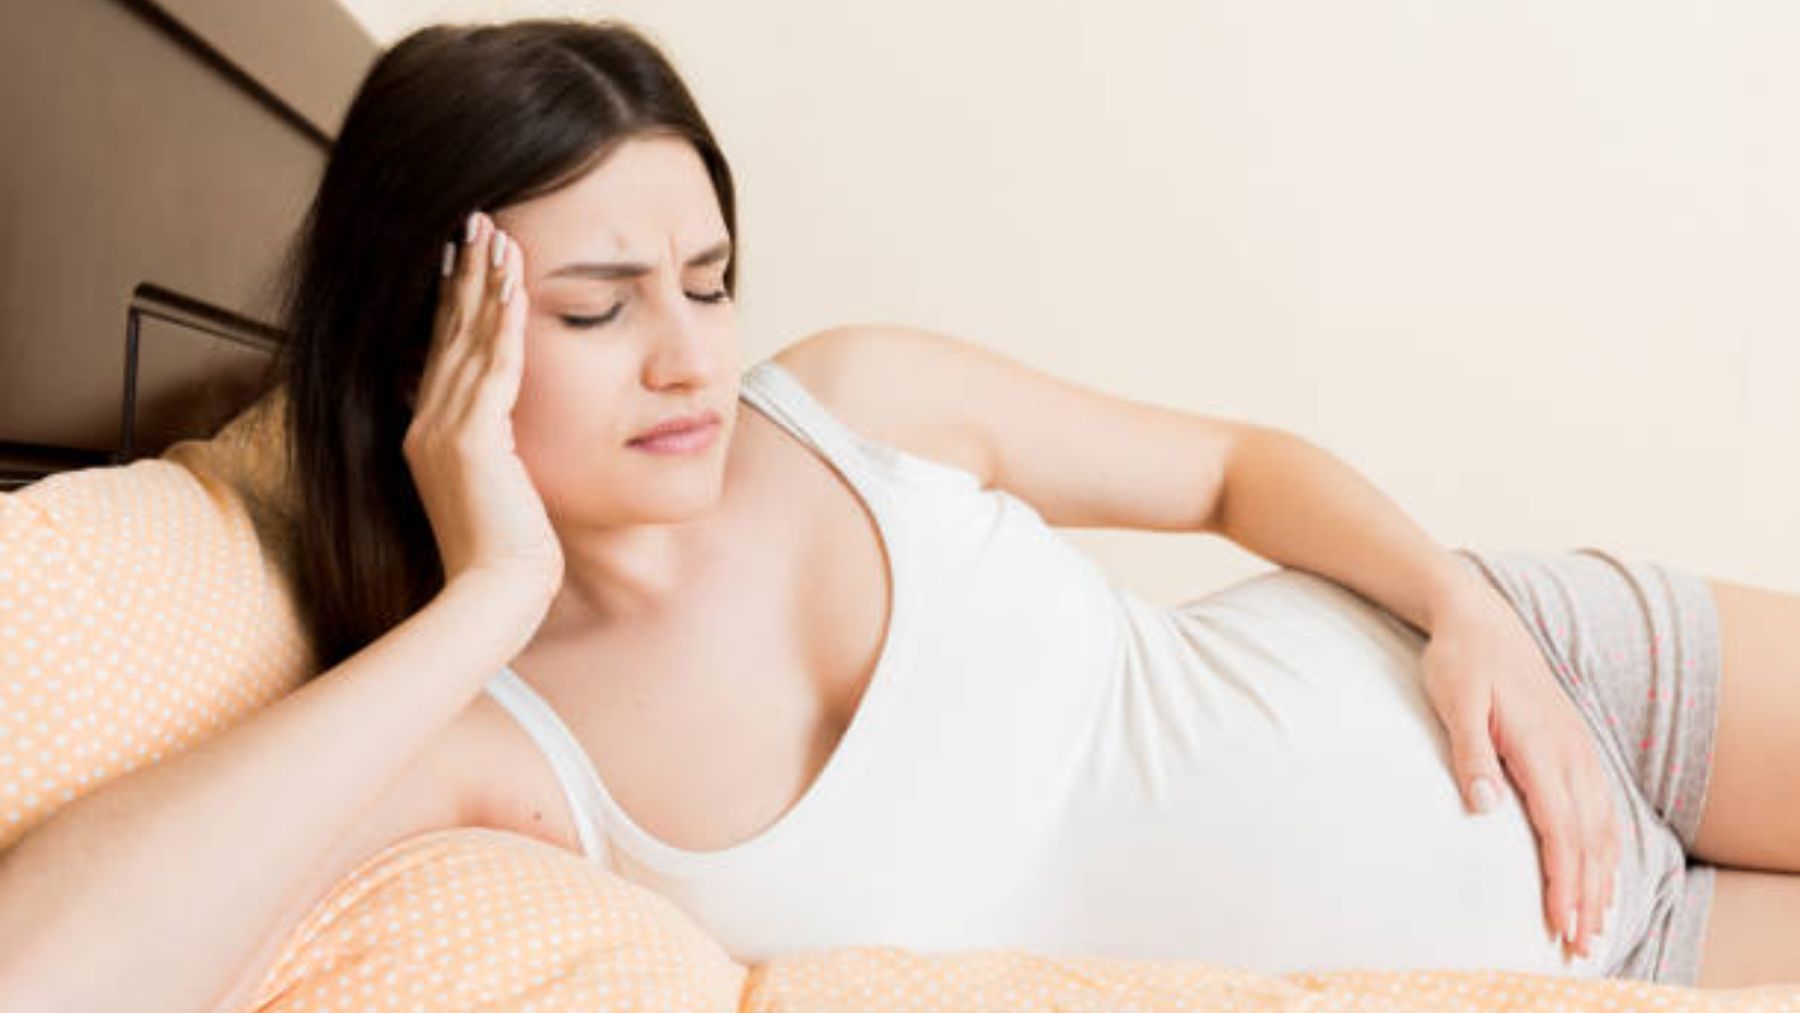 Los signos de alarma durante el embarazo.